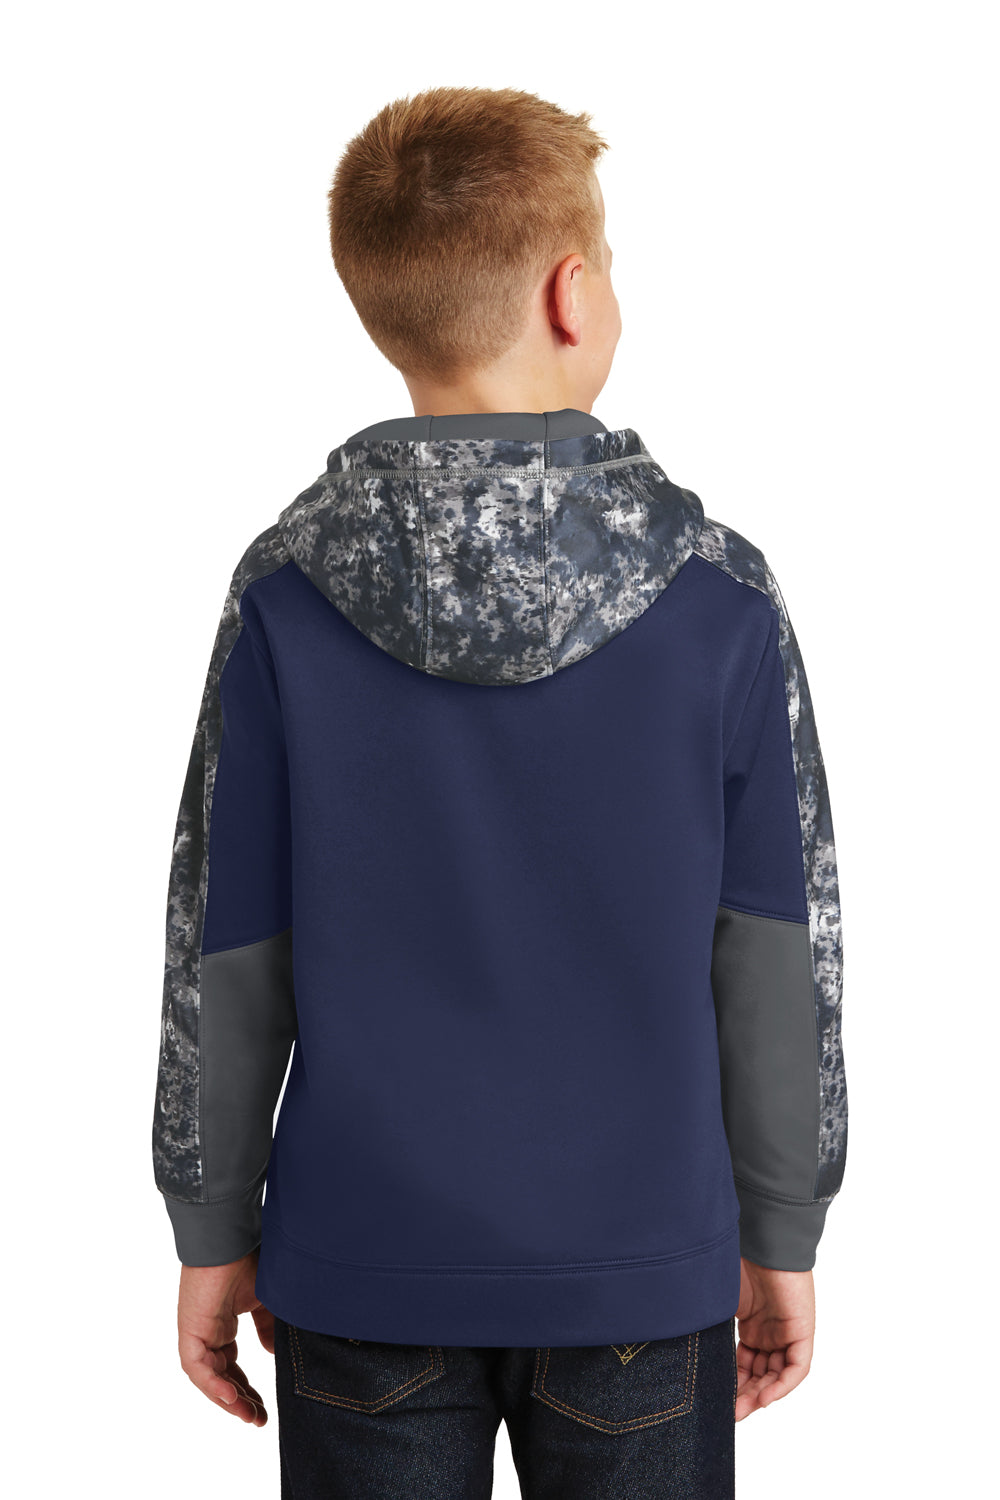 Sport-Tek YST231 Youth Sport-Wick Mineral Freeze Moisture Wicking Fleece Hooded Sweatshirt Hoodie Navy Blue/Grey Back